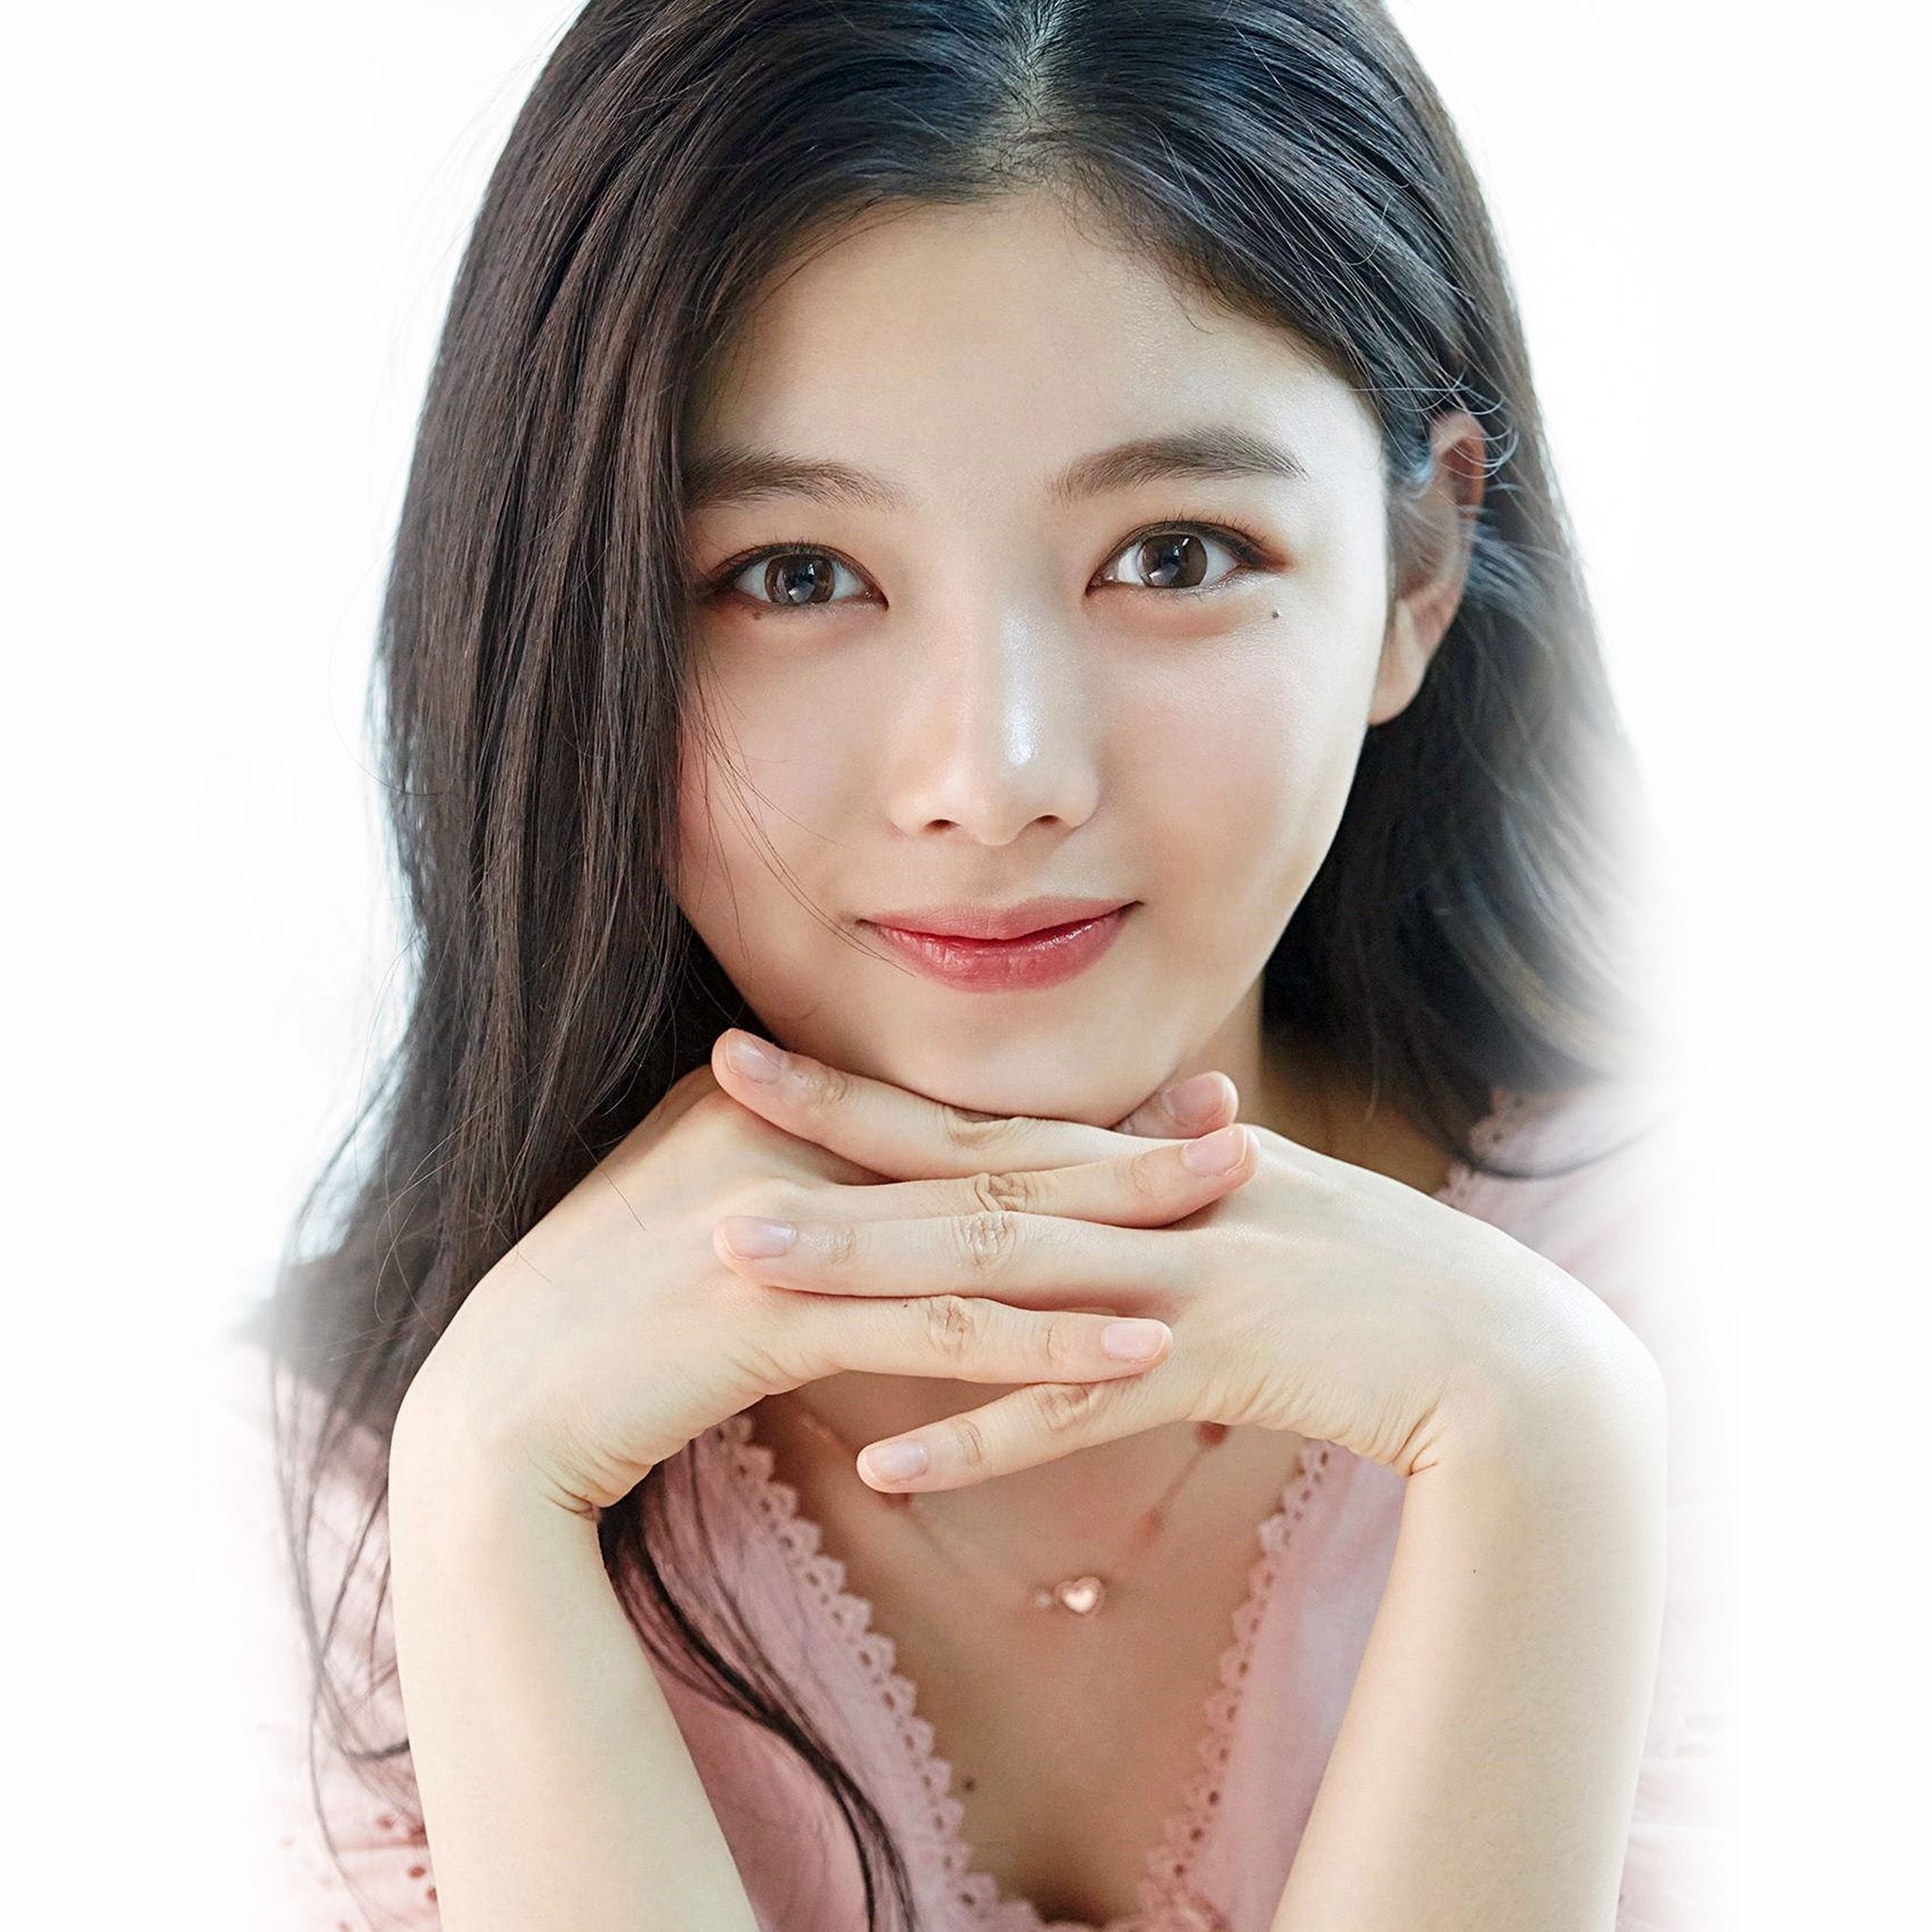 Yoojung Kim Kpop Girl Smile iPad Air wallpaper 